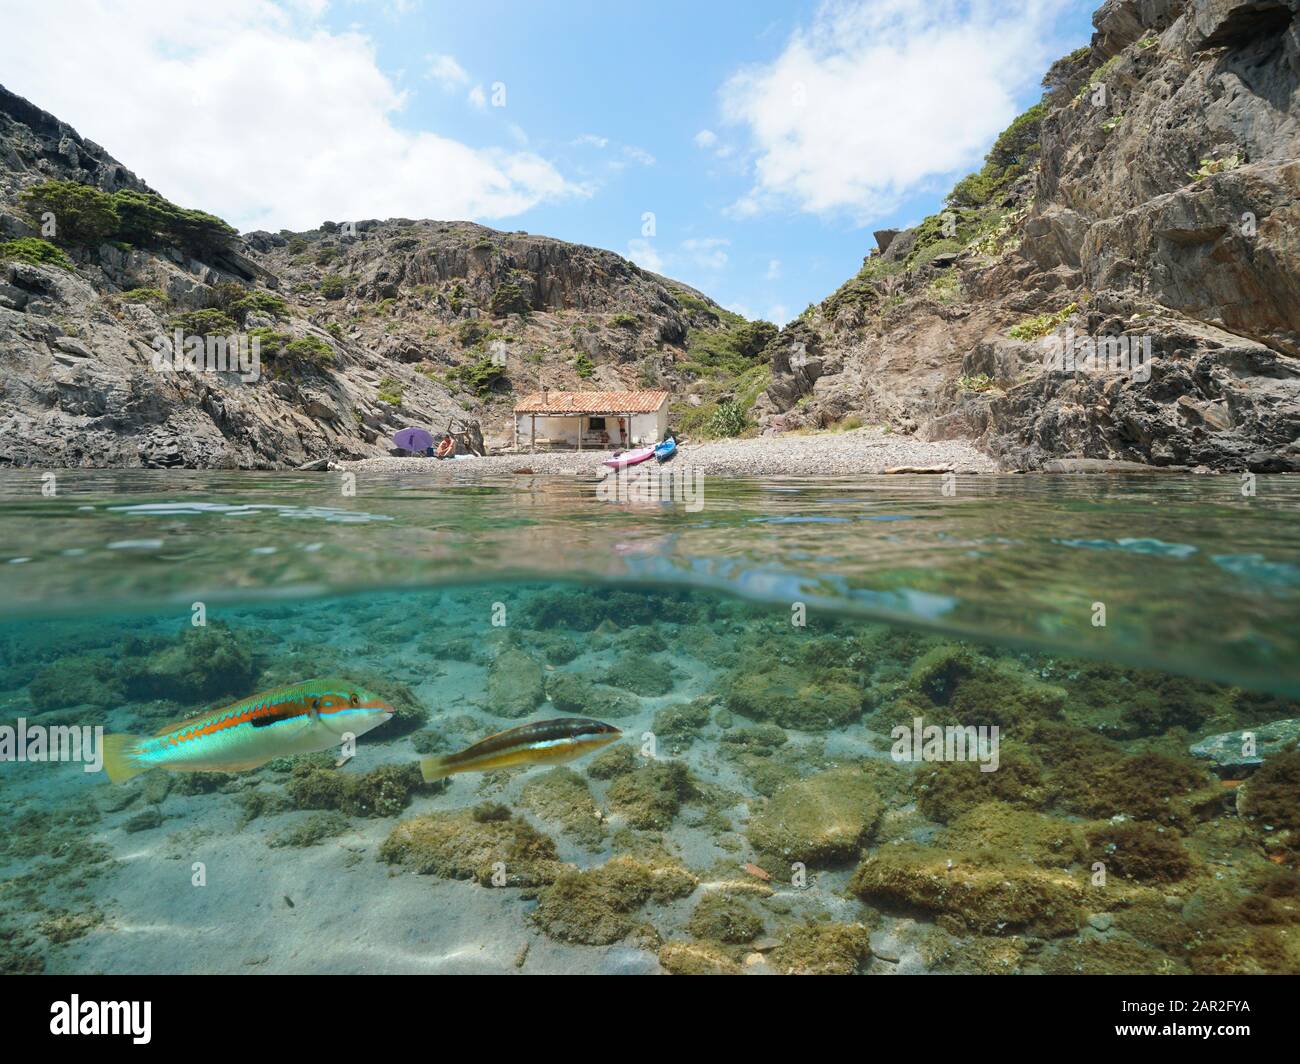 Mar Mediterráneo tranquila playa rocosa en verano con una cabaña y peces bajo el agua, vista dividida sobre y bajo la superficie del agua, España, Cap de Creus Foto de stock